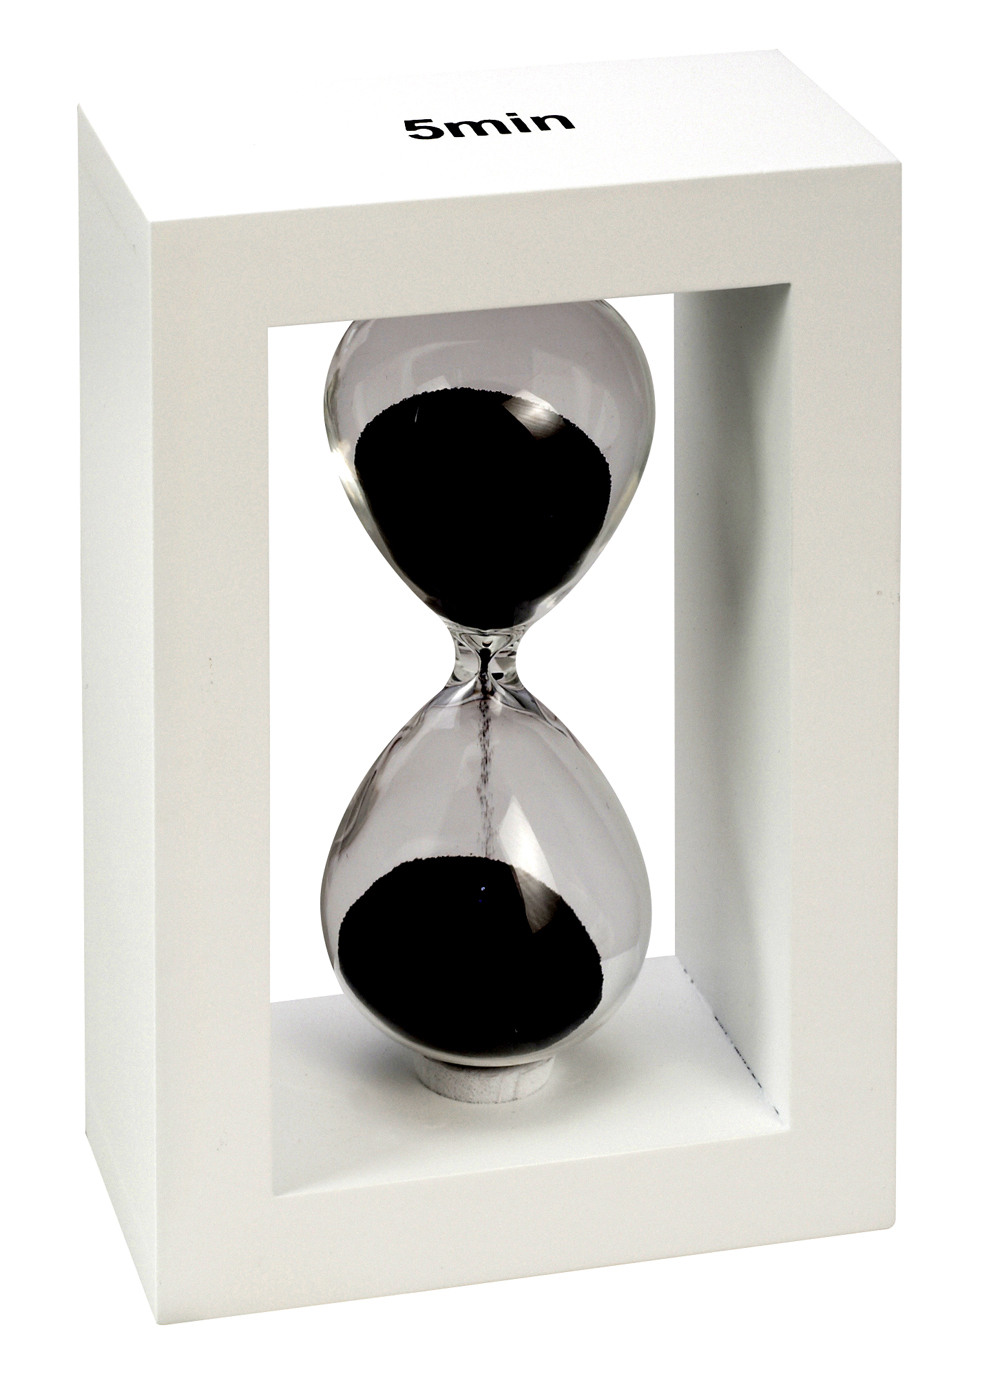 שעון חול מסגרת עץ לבנה - בינוני. 
5 דקות
גובהה 15 ס